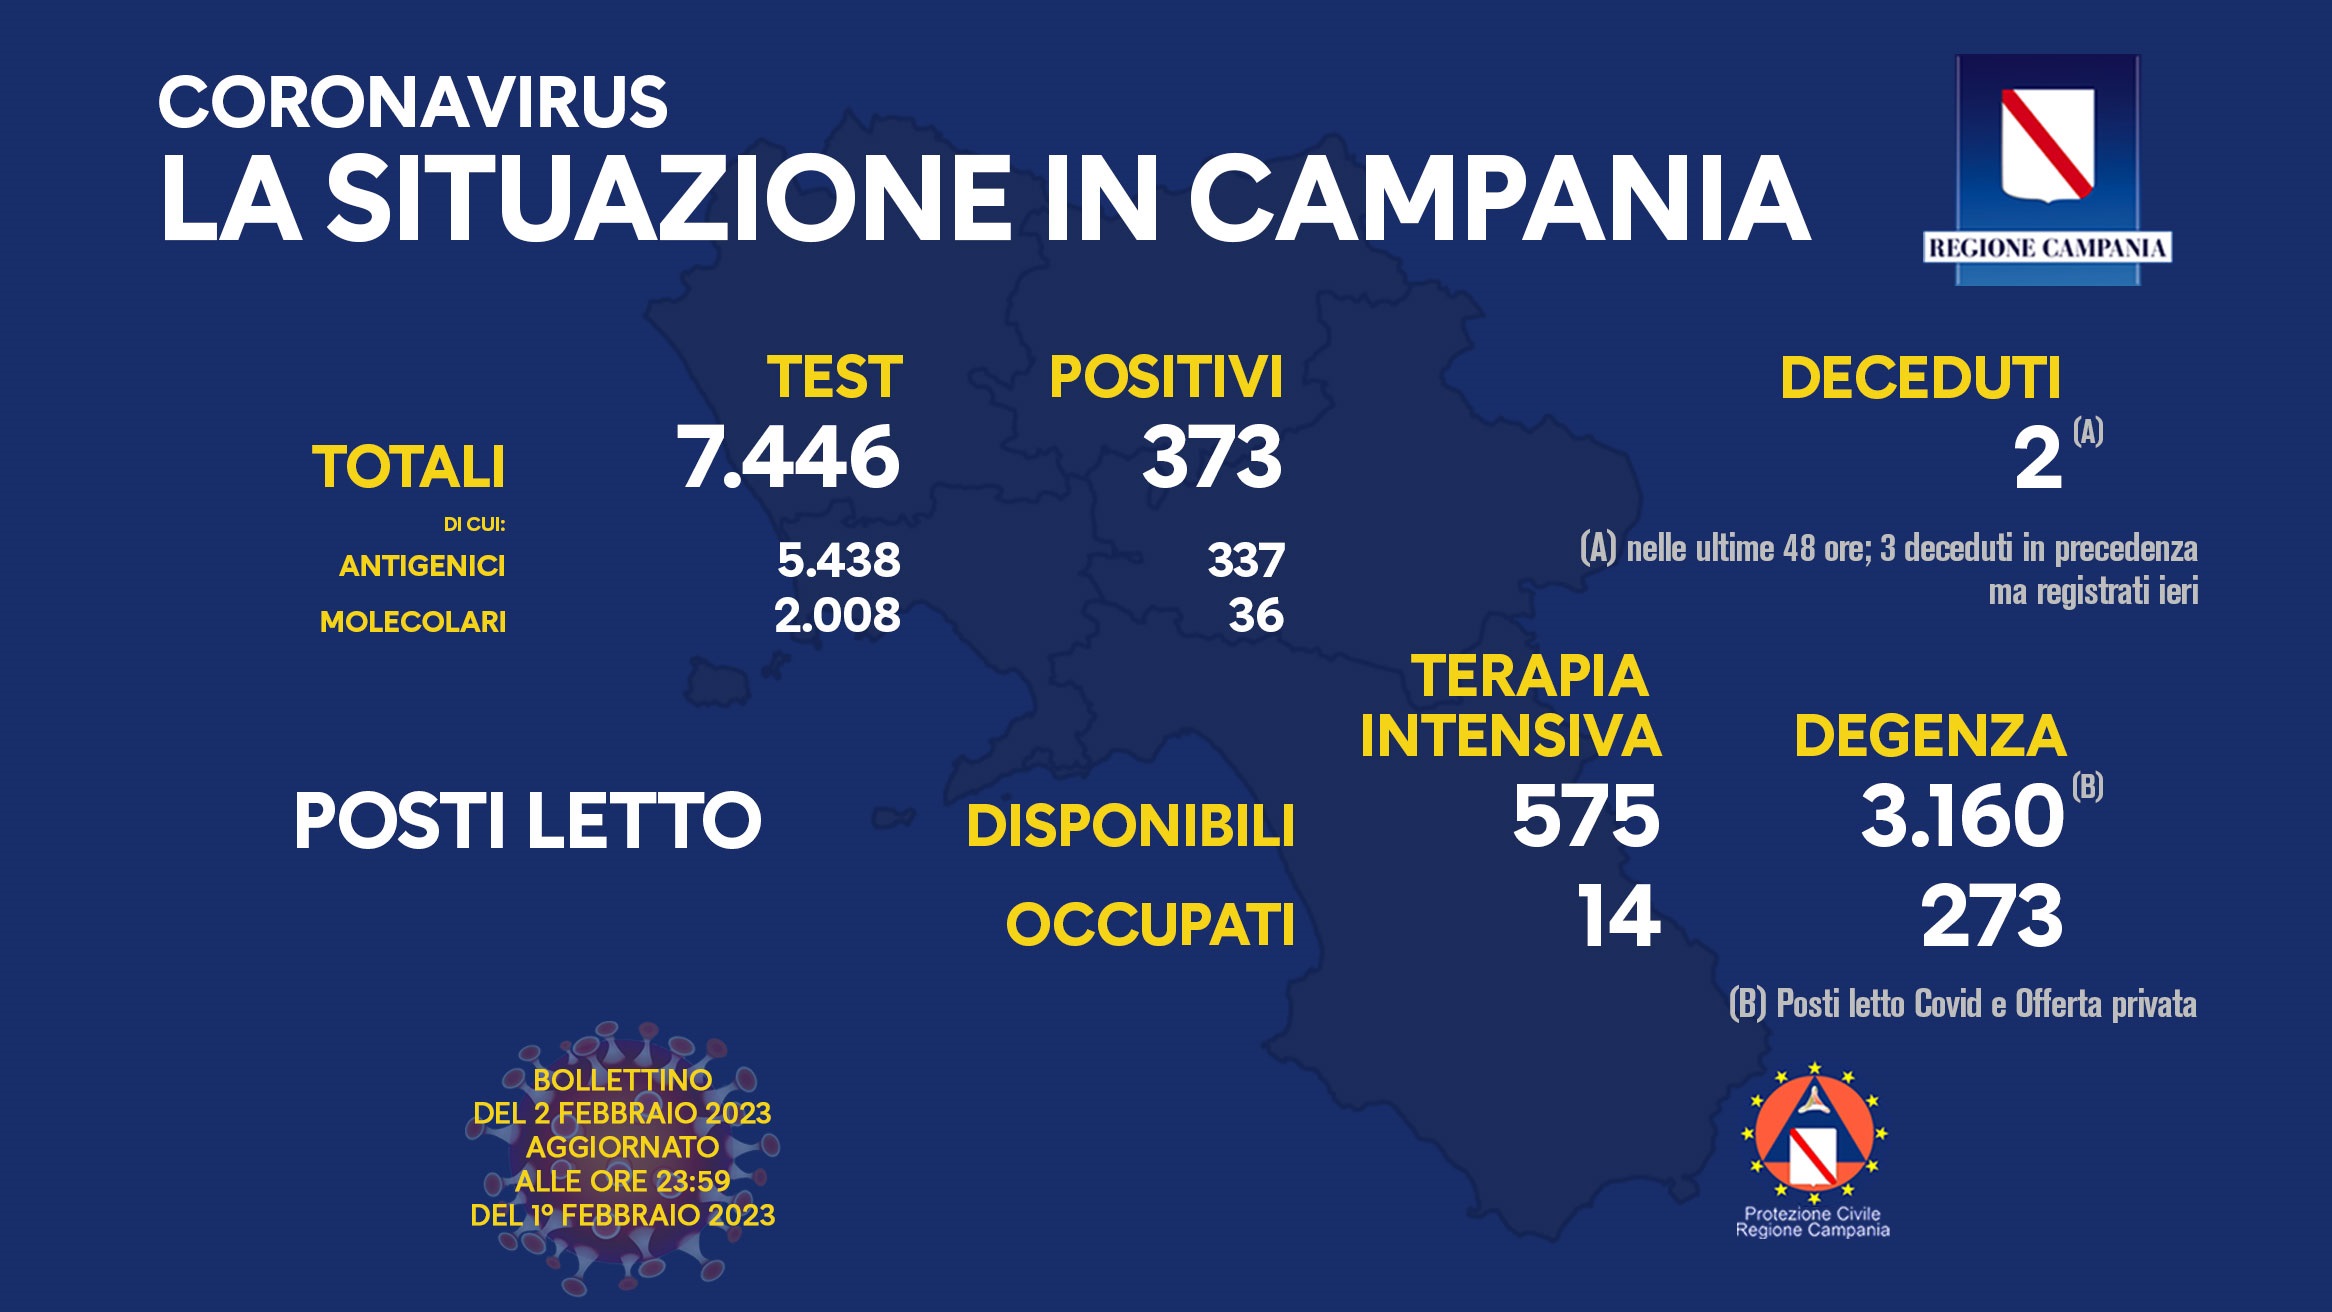 Regione Campania: Coronavirus, Unità di Crisi, Bollettino, 373 casi positivi, 2 decessi